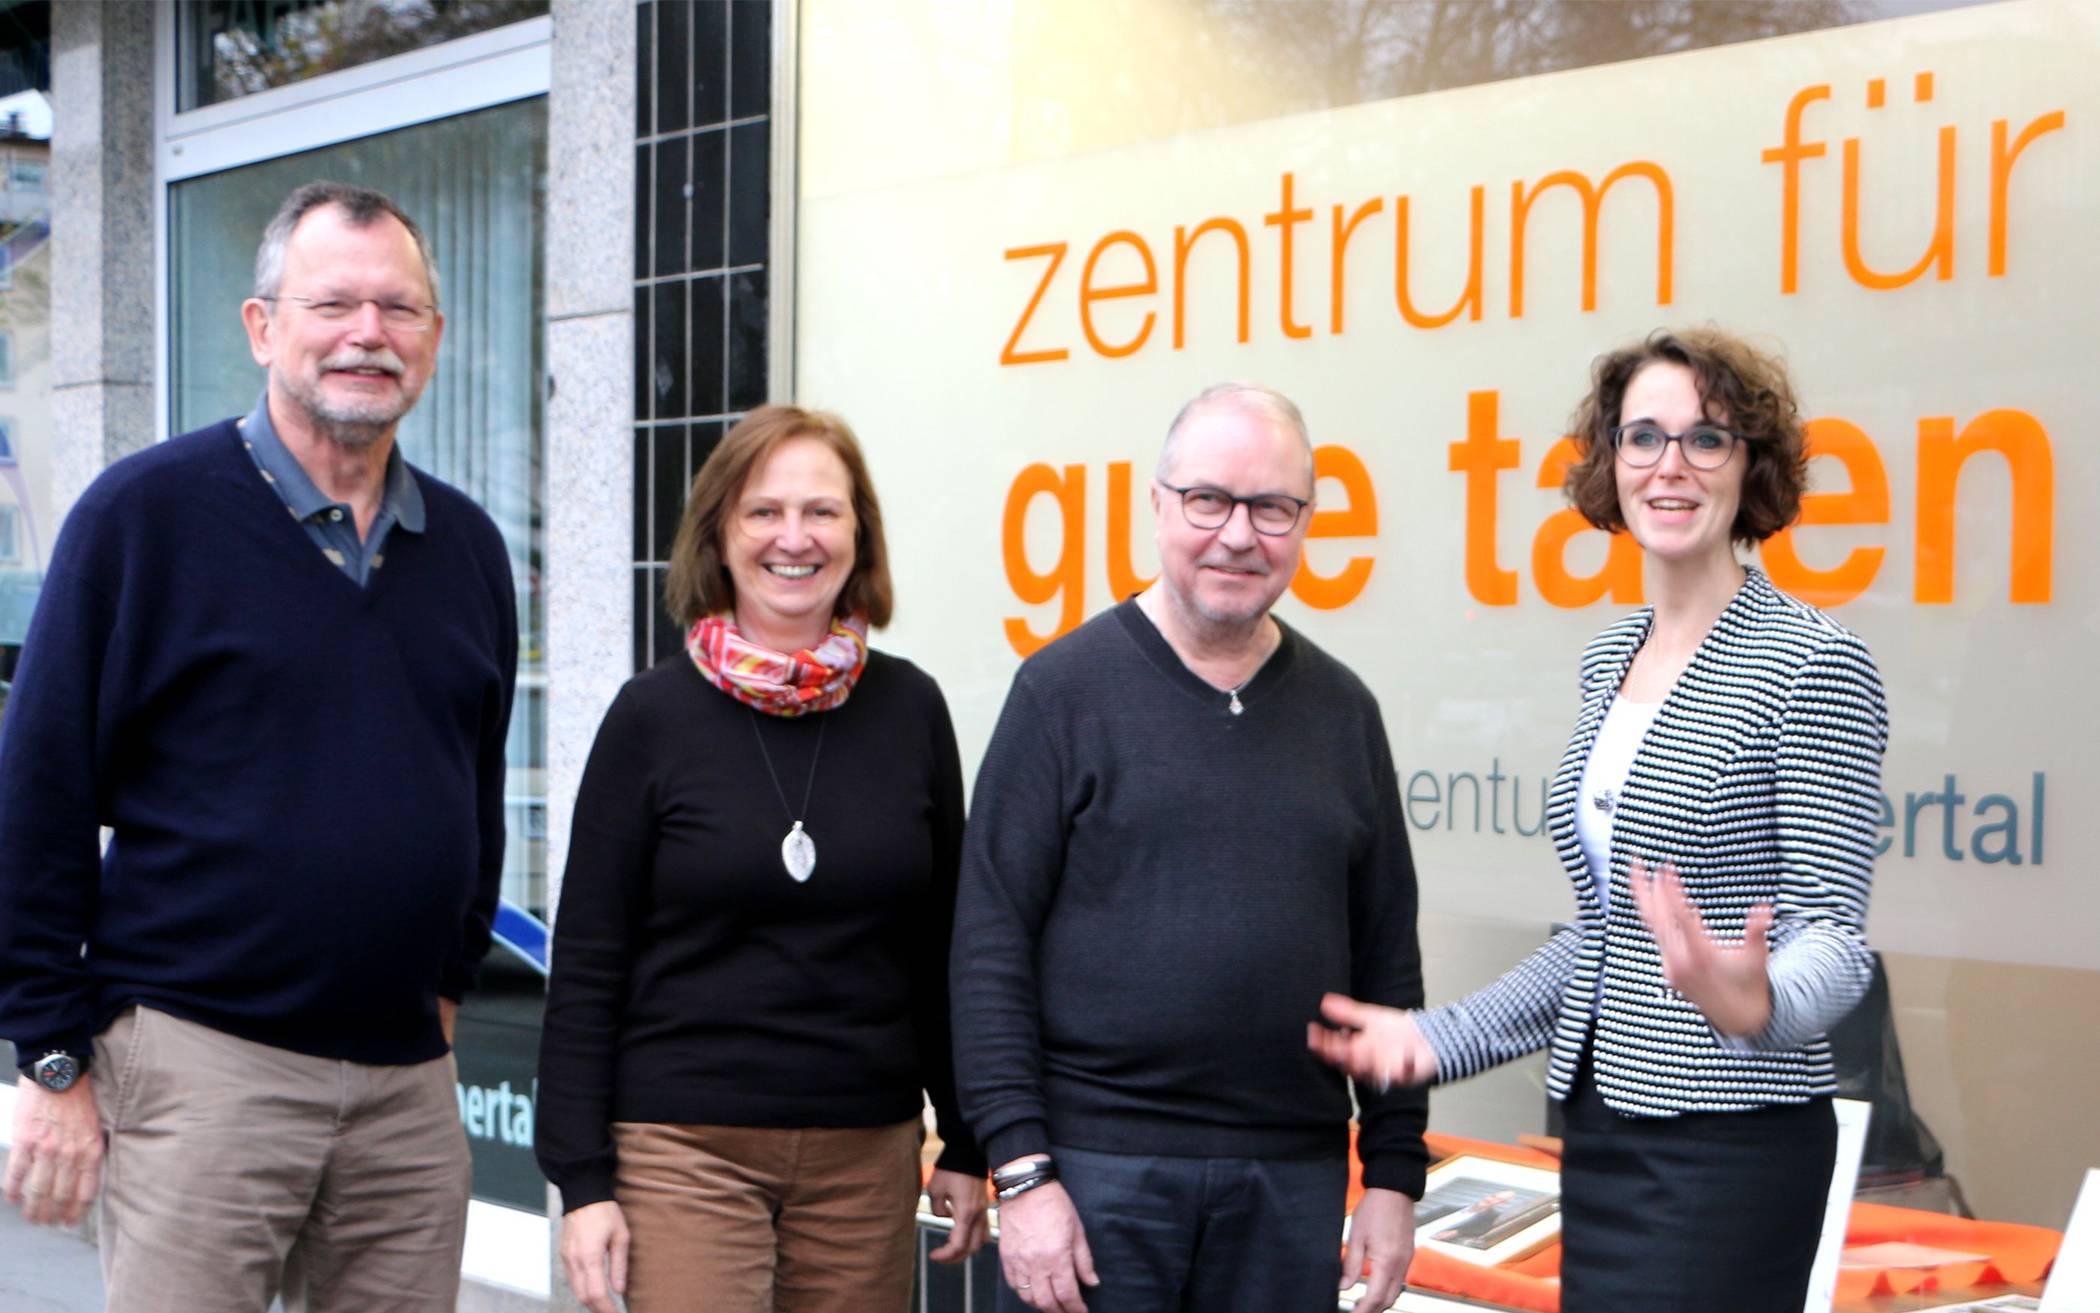  Der neue Vorstand im Zentrum für gute Taten: Leo Braunleder, Angelika Leipnitz, Ralf Keller, Constanze Klee. 